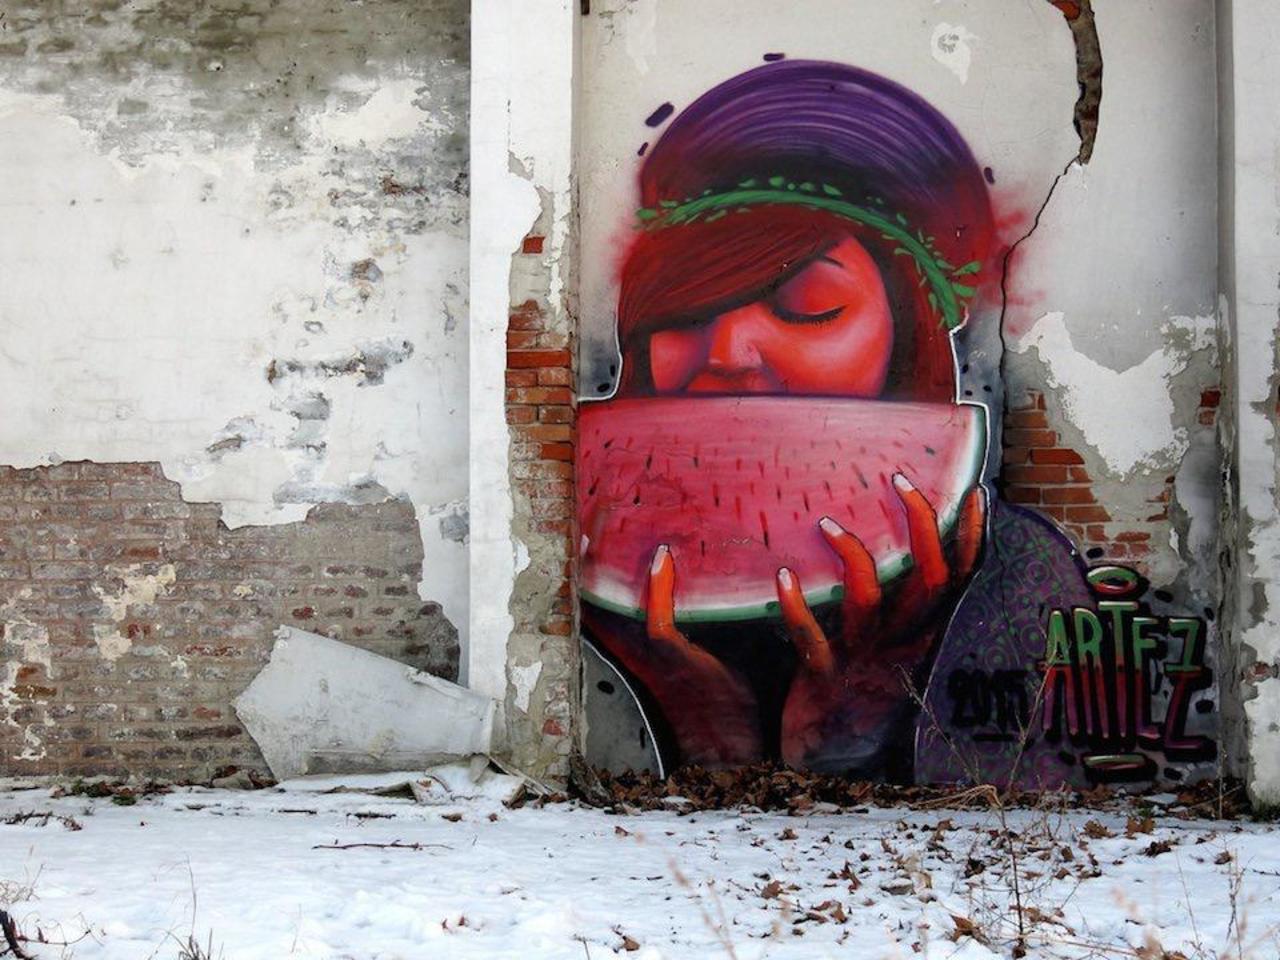 “@Pitchuskita: Artez 
Belgrade, Serbia
#streetart #art #graffiti #mural http://t.co/vdANUk5MLI”